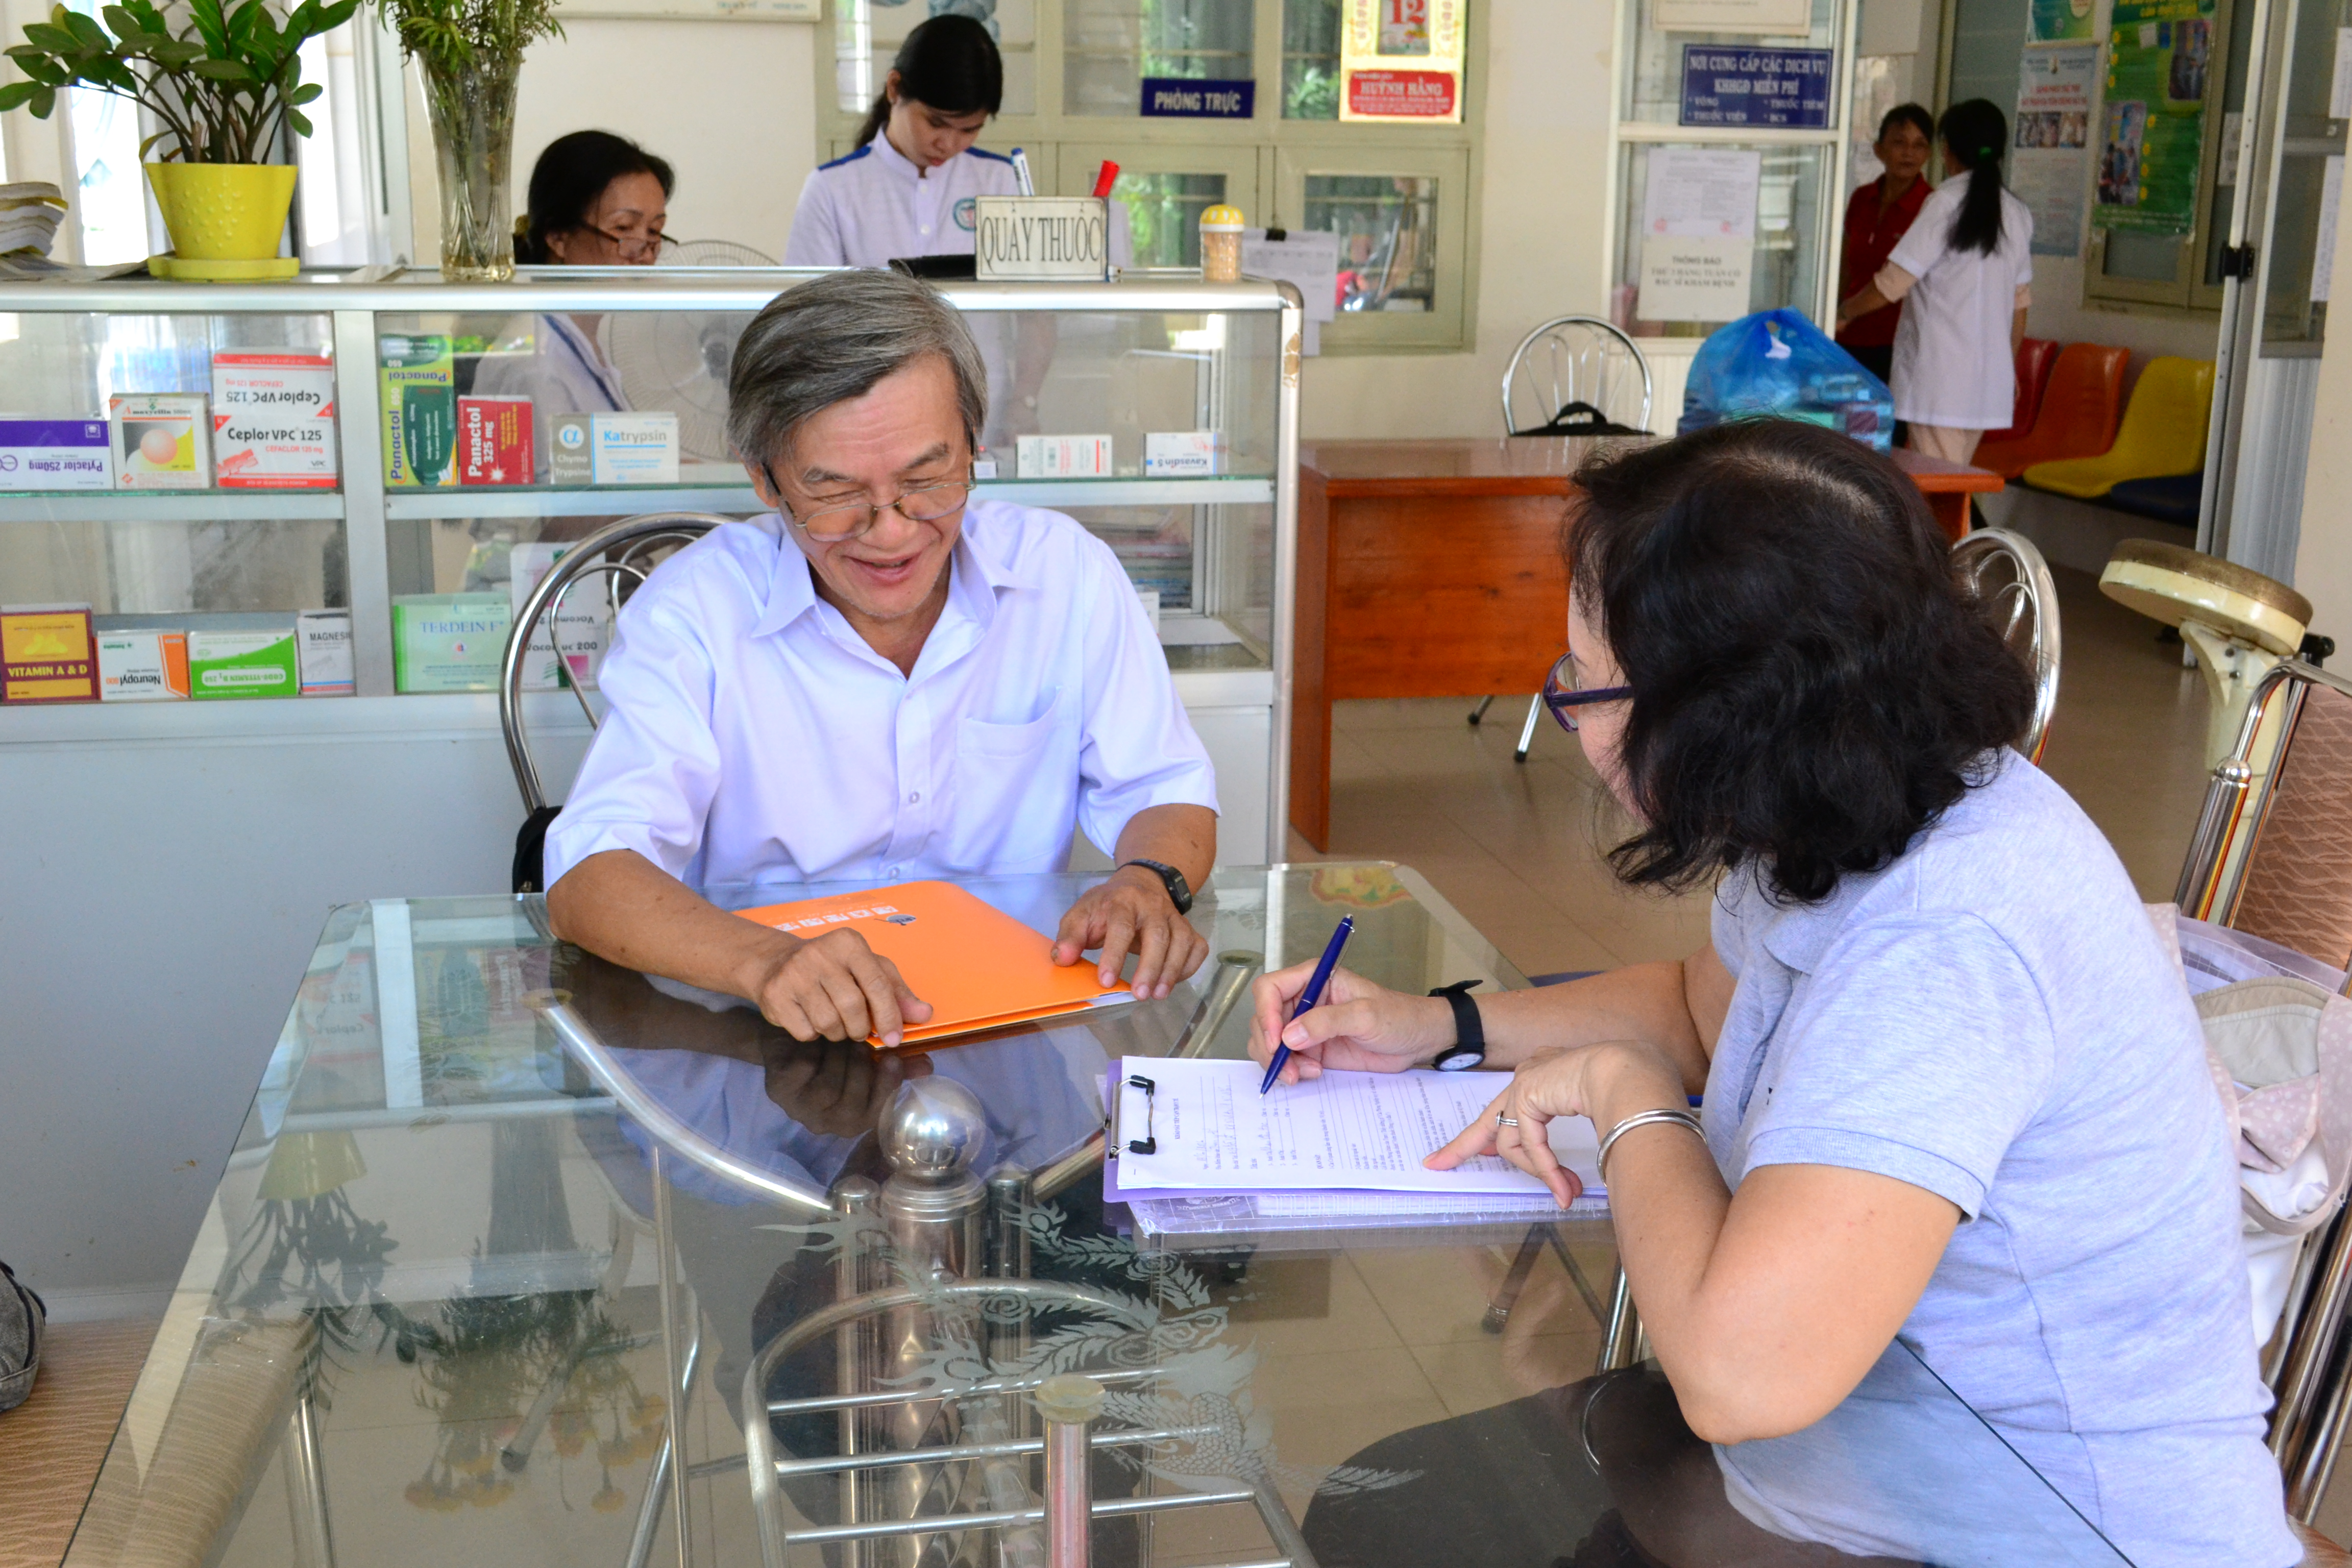 8. Ông Phan Vân Hạc - Phó trưởng trạm y tế cho biết đa số NKT có bảo hiểm y tế nên thường lên bệnh viện để khám bệnh. Chỉ mtt số ít NKT nhận các hướng dẫn vật lý trị liệu từ tr